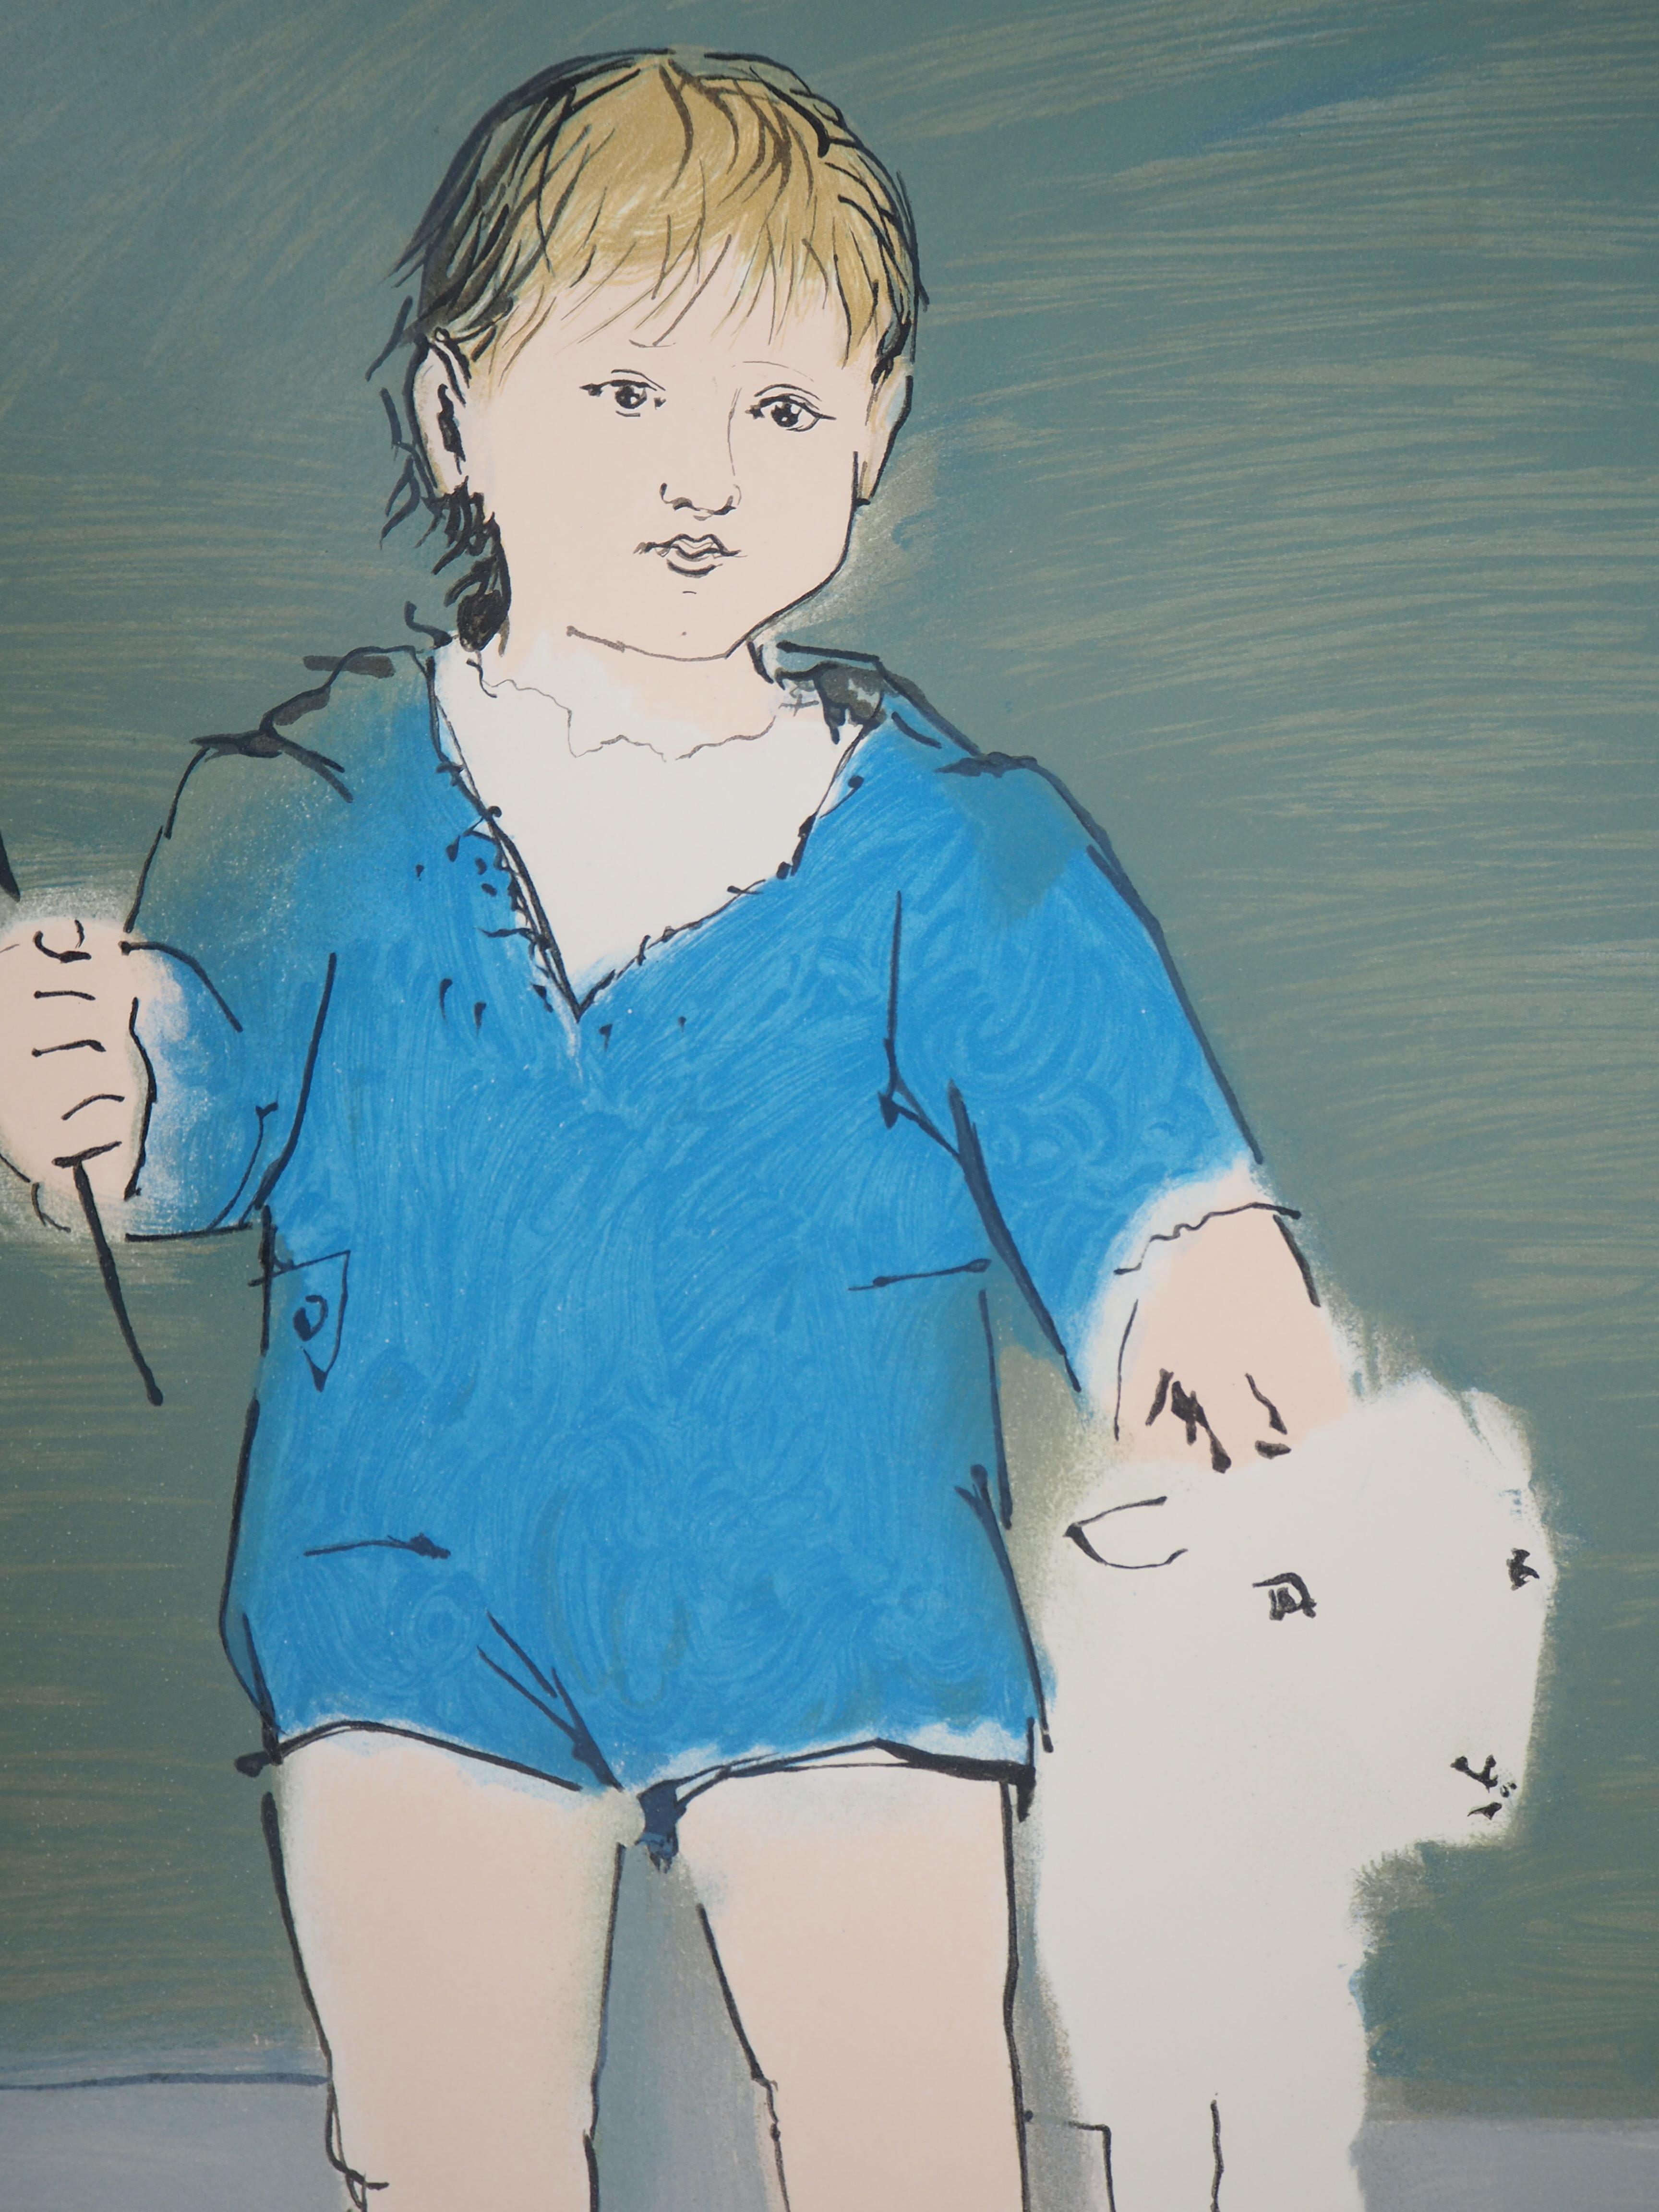 Pablo PICASSO (après)
Enfant avec un agneau

Lithographie d'après une aquarelle
Imprimé dans l'atelier de Mourlot
Signé au crayon par Deschamps (le lithographe de Picasso)
Numéroté / 500
Authentifié avec le cachet de Mourlot
Sur vellum 75.5 x 53.5